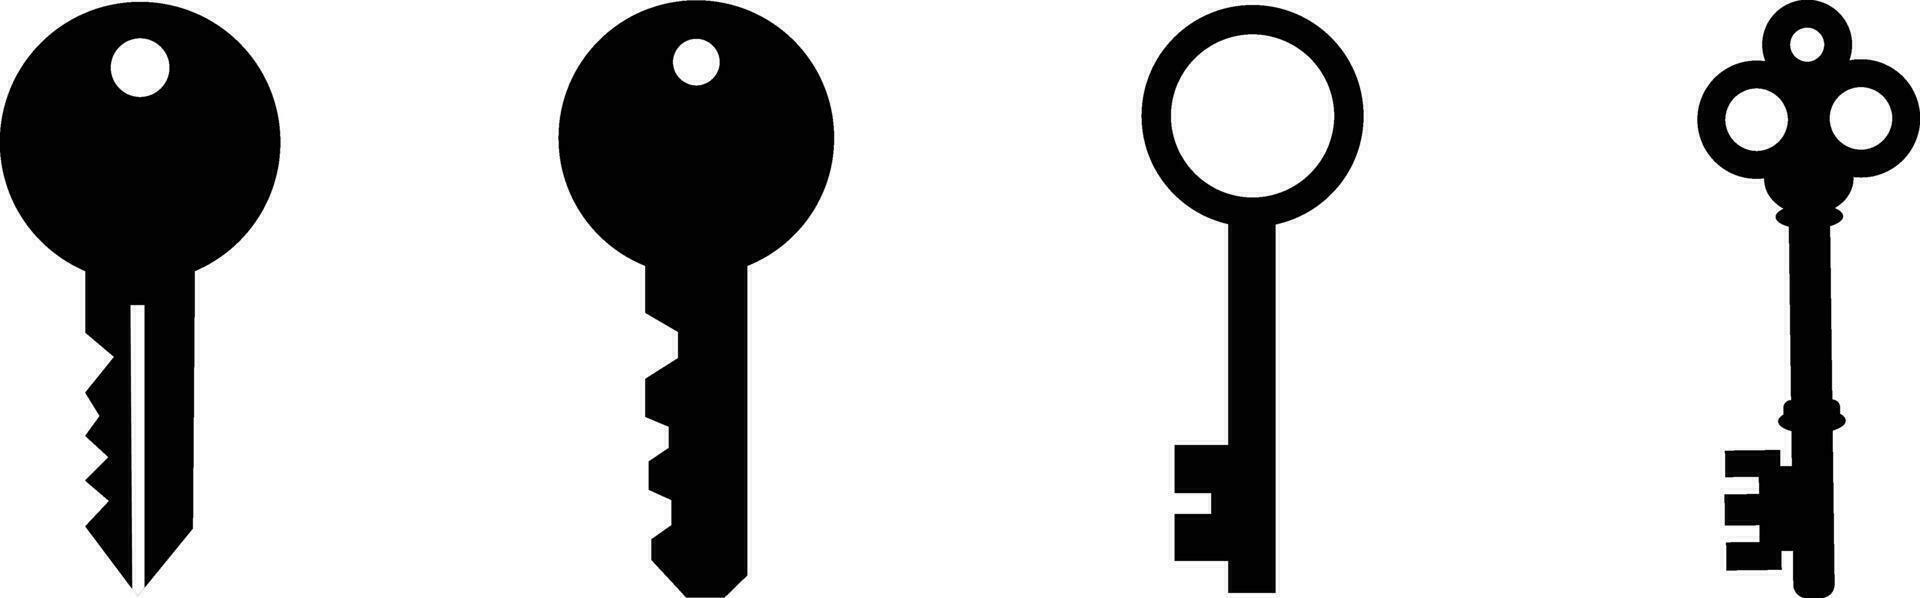 Schlüssel Symbol Symbol eben Stil Satz. Tür oder Haus Schlüssel zu Freischalten sperren Sammlung. Sicherheit System Konzept repräsentiert durch Silhouette Schlüssel Zeichen Gruppe vektor